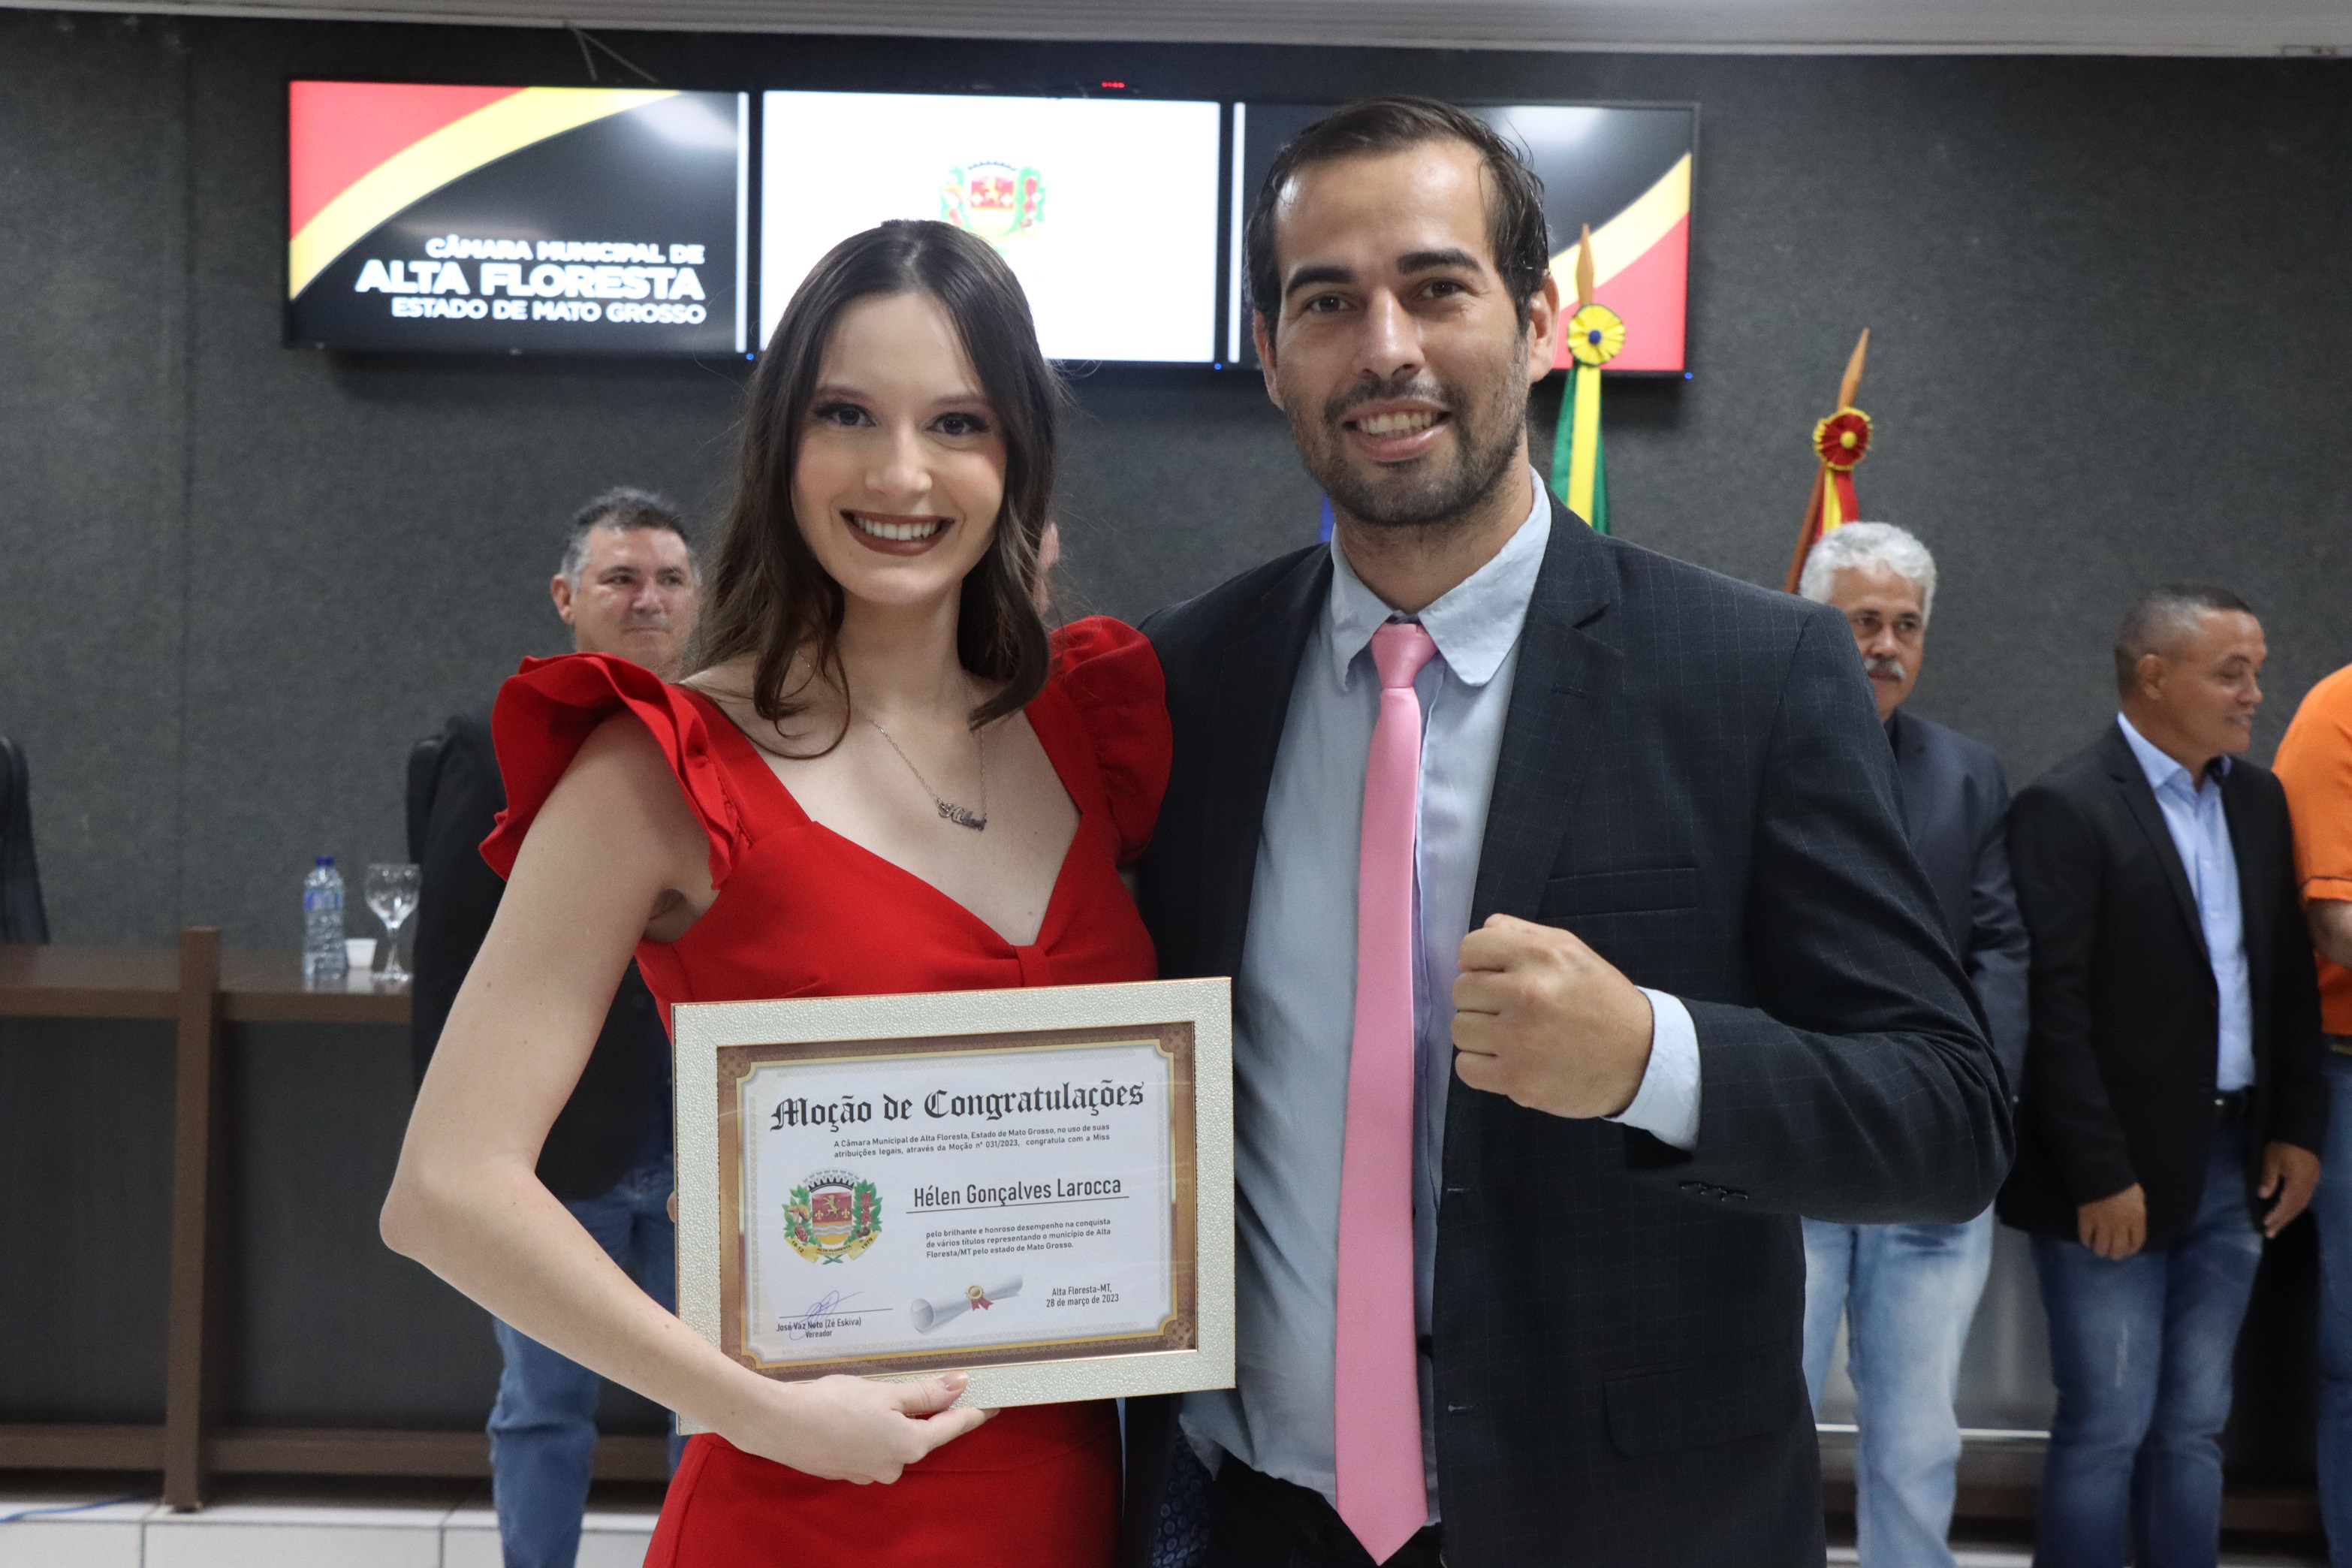 Vereador Zé Eskiva homenageia Miss Hélen Larocca com Moção de Congratulações